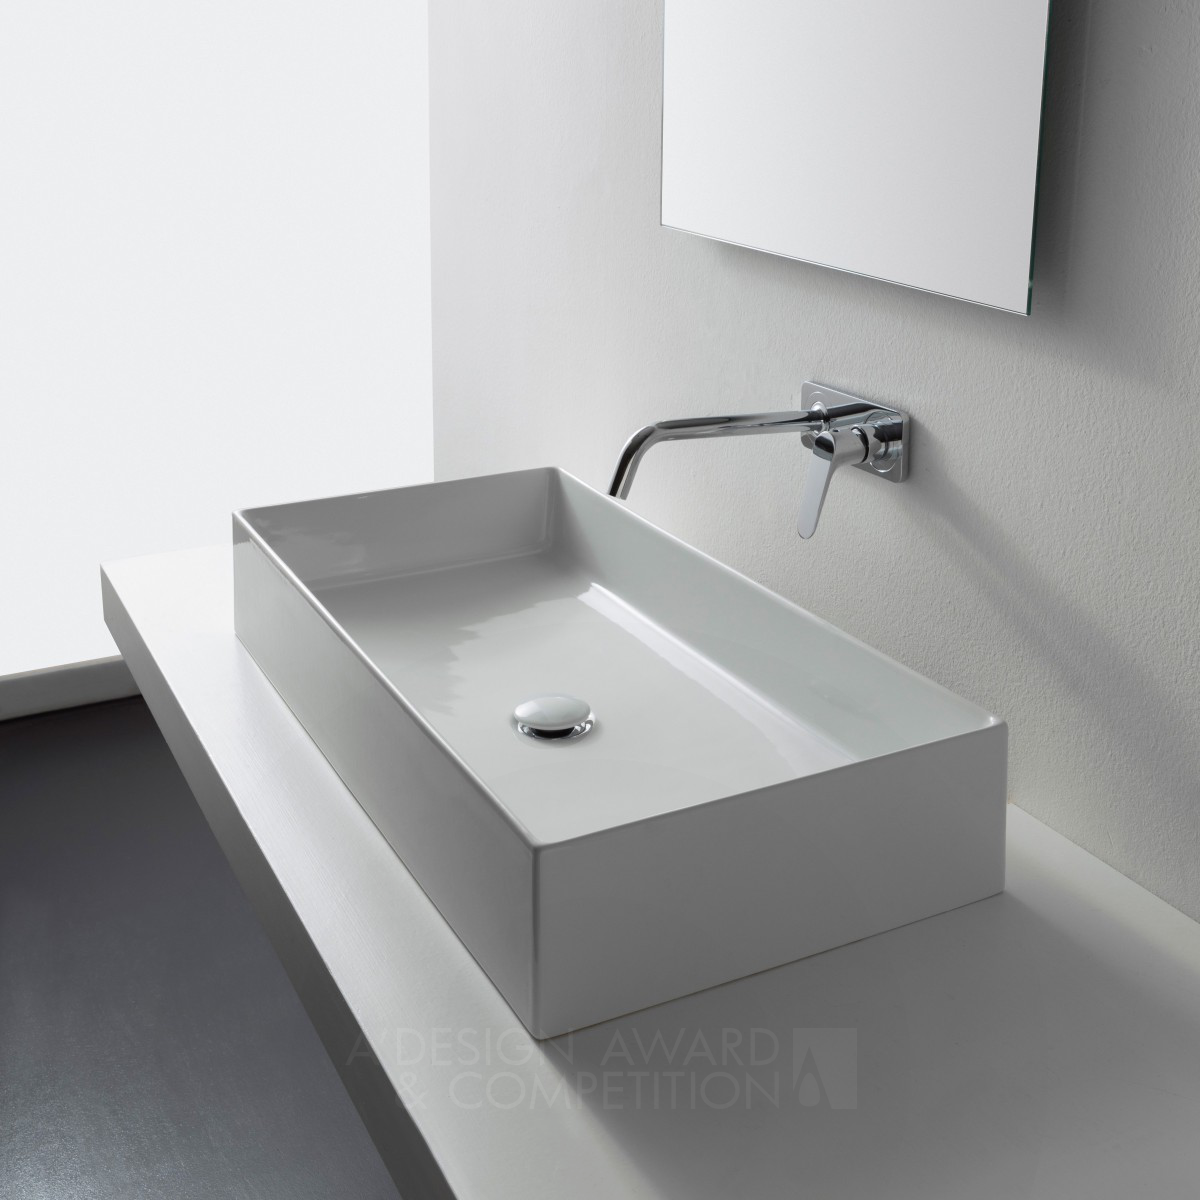 Good Wash basin Design